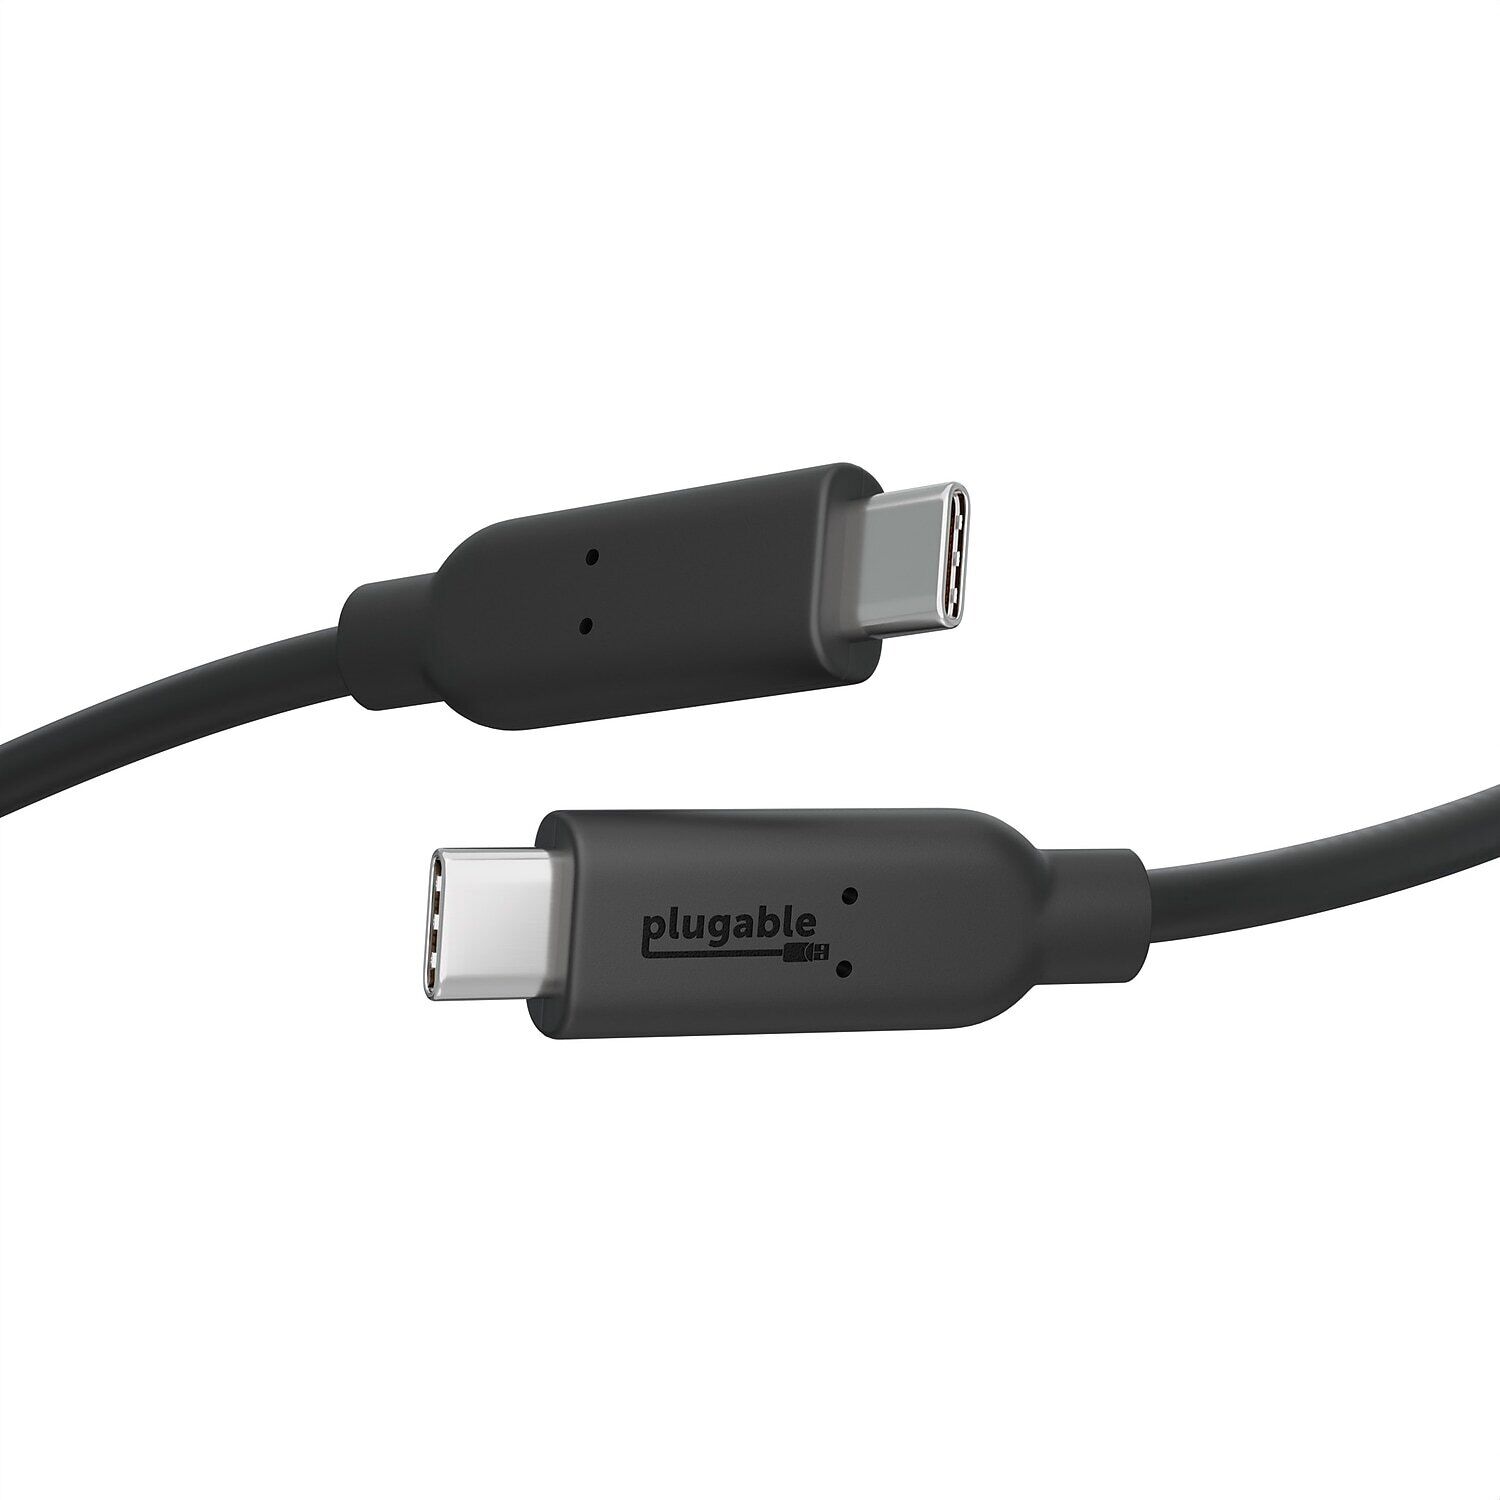 Plugable 3.3' USB Cable Black (USBC-C100)